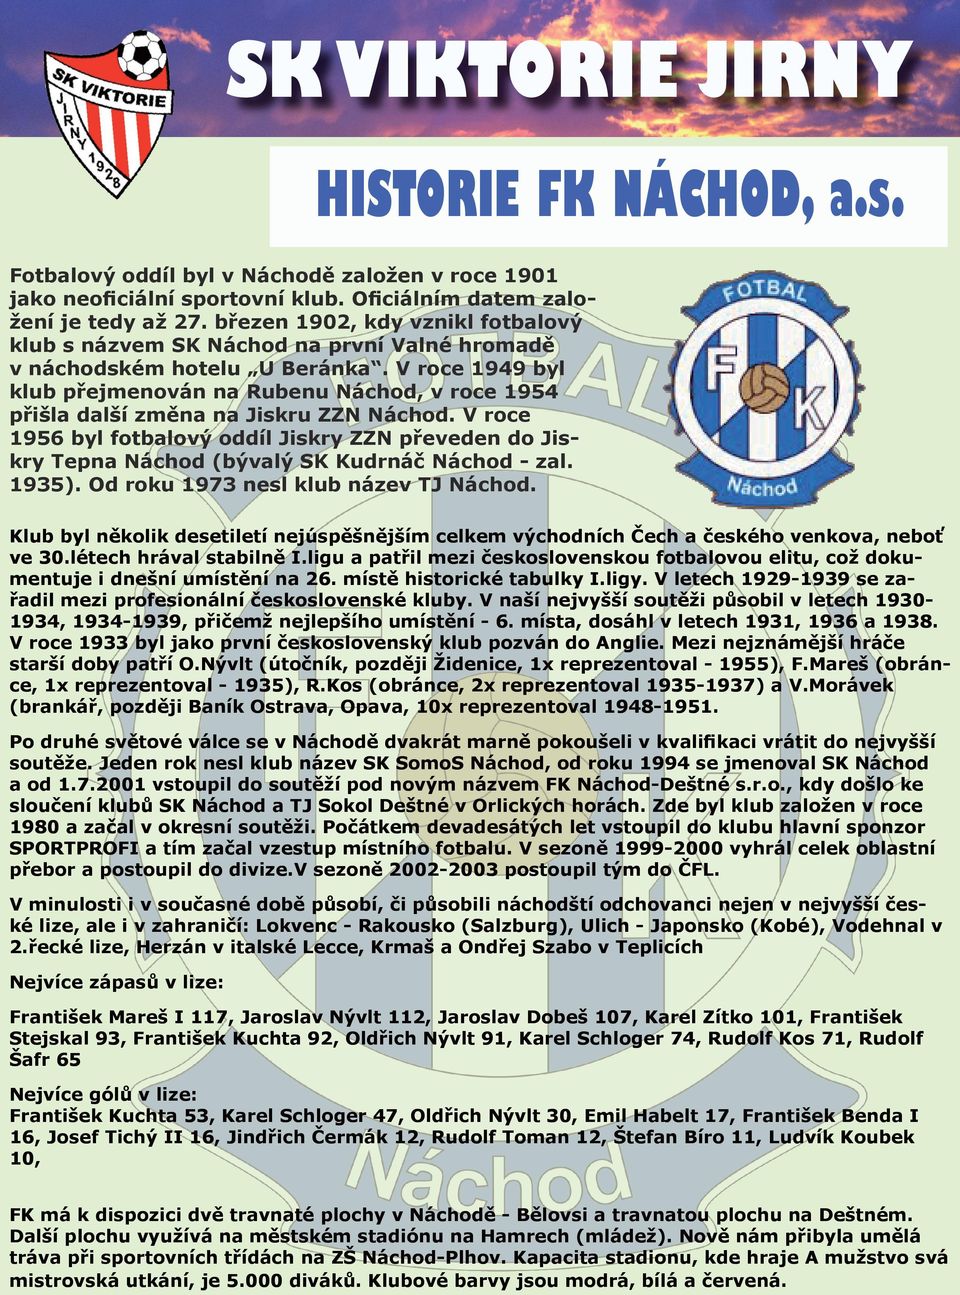 V roce 1949 byl klub přejmenován na Rubenu Náchod, v roce 1954 přišla další změna na Jiskru ZZN Náchod.